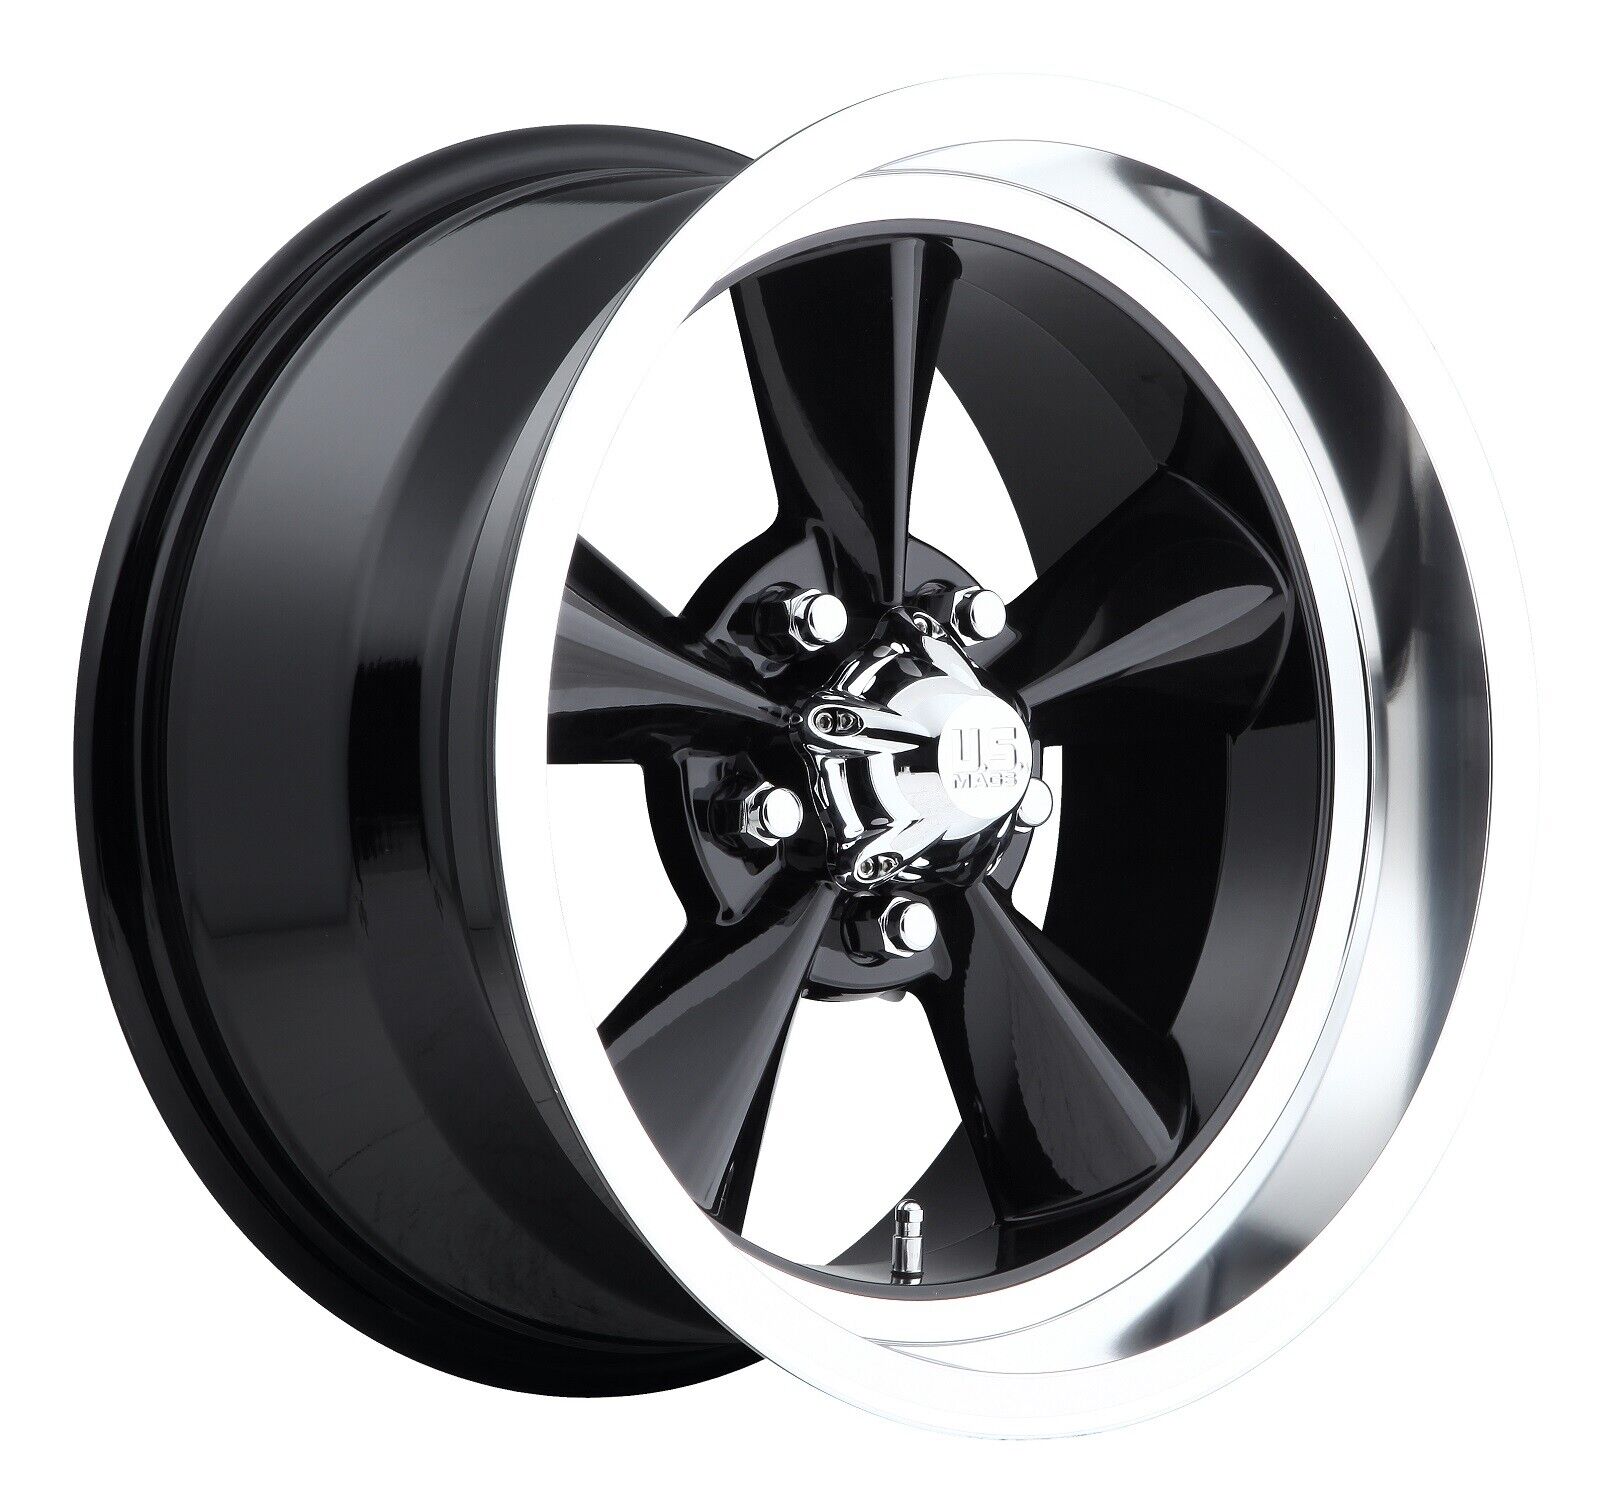 CPP US Mags U107 Standard wheels 17x8 + 18x8 fits: OLDSMOBILE CUTLASS 442 F85